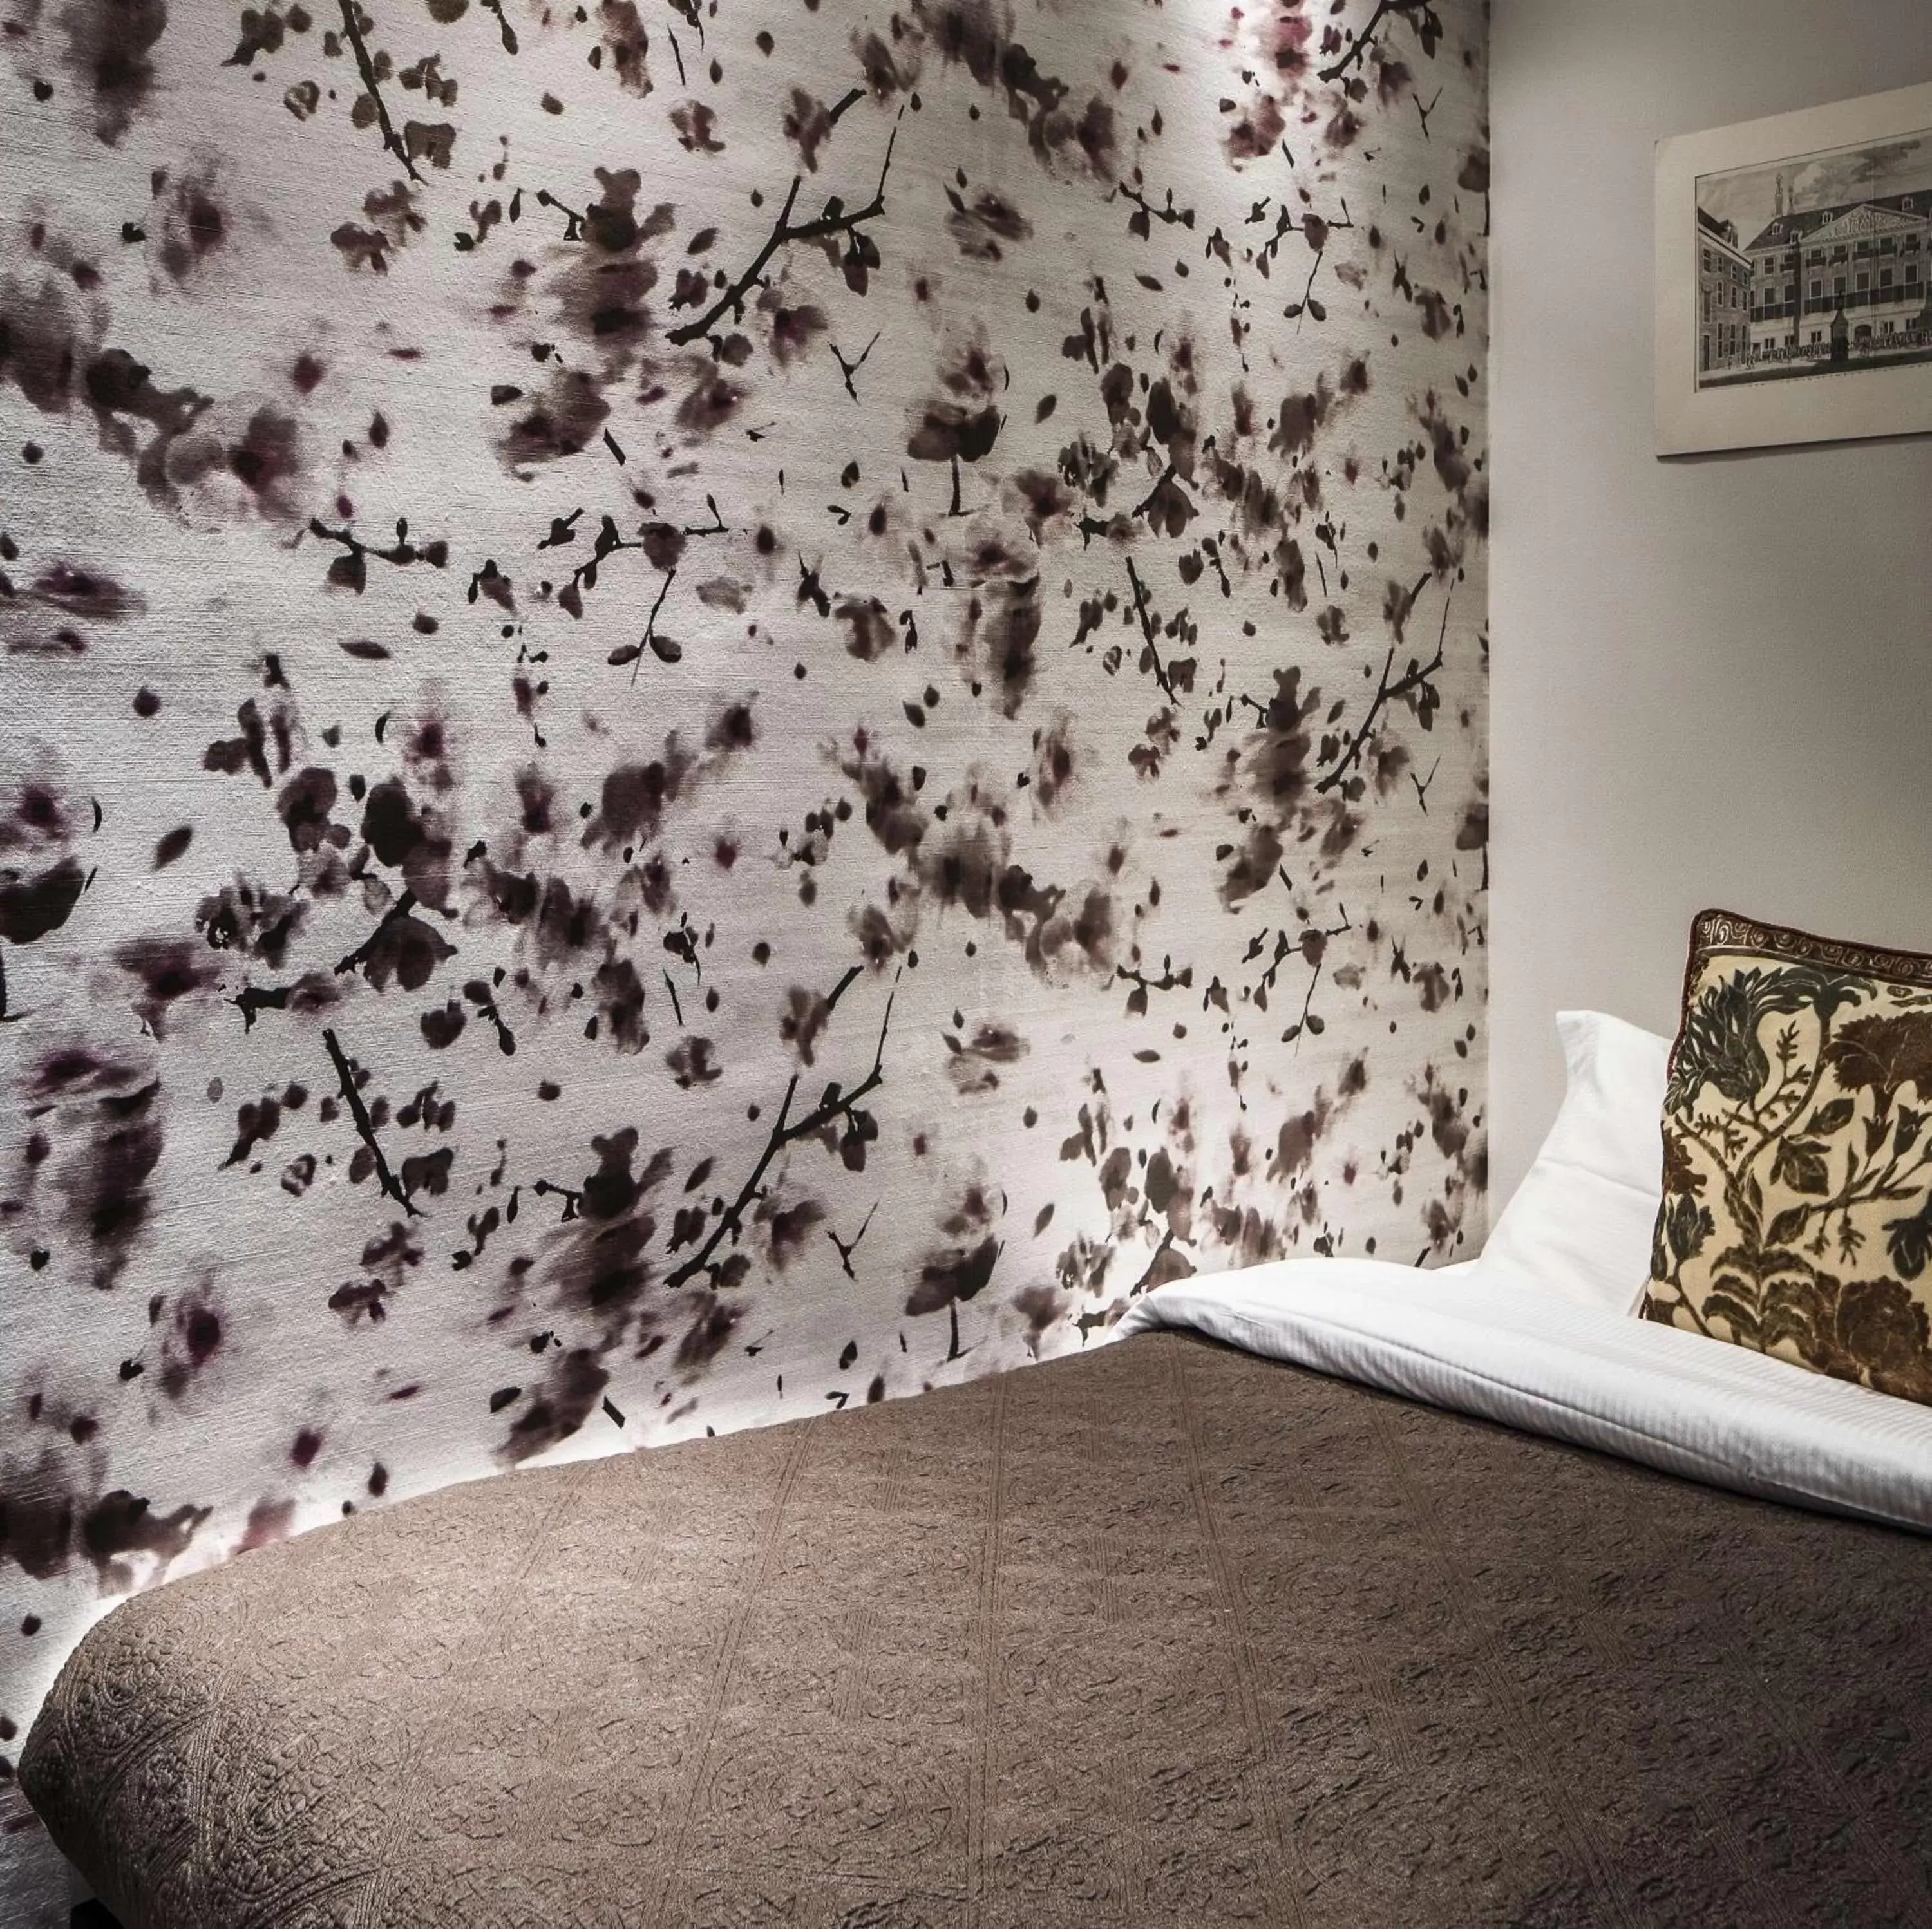 Bedroom, Bed in KeizersgrachtSuite471